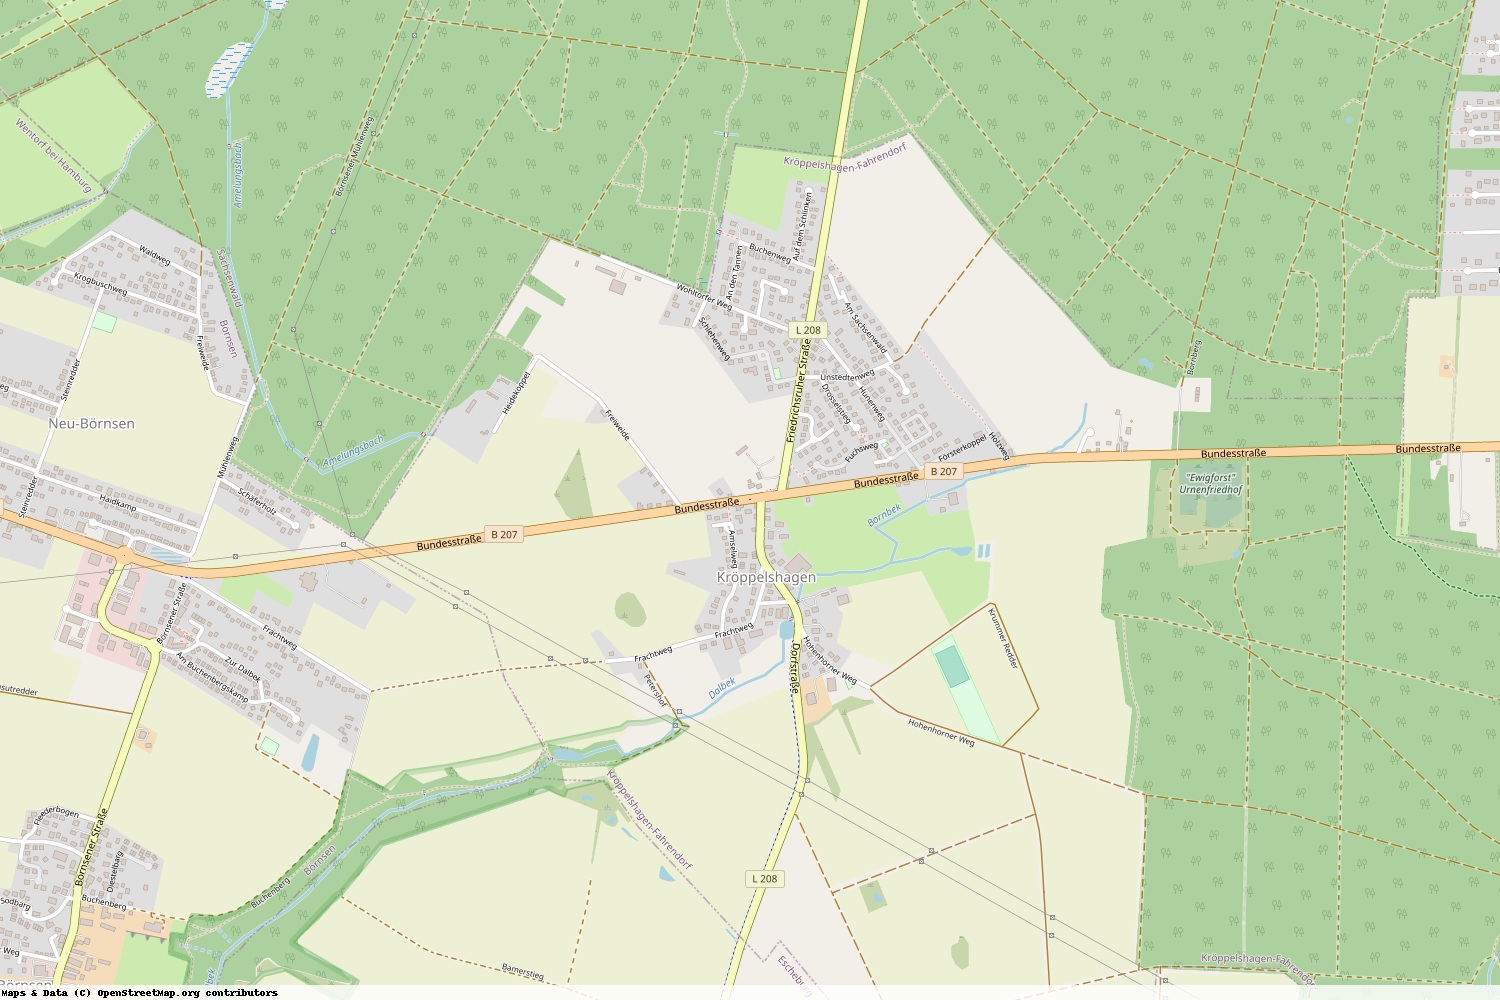 Ist gerade Stromausfall in Schleswig-Holstein - Herzogtum Lauenburg - Kröppelshagen-Fahrendorf?